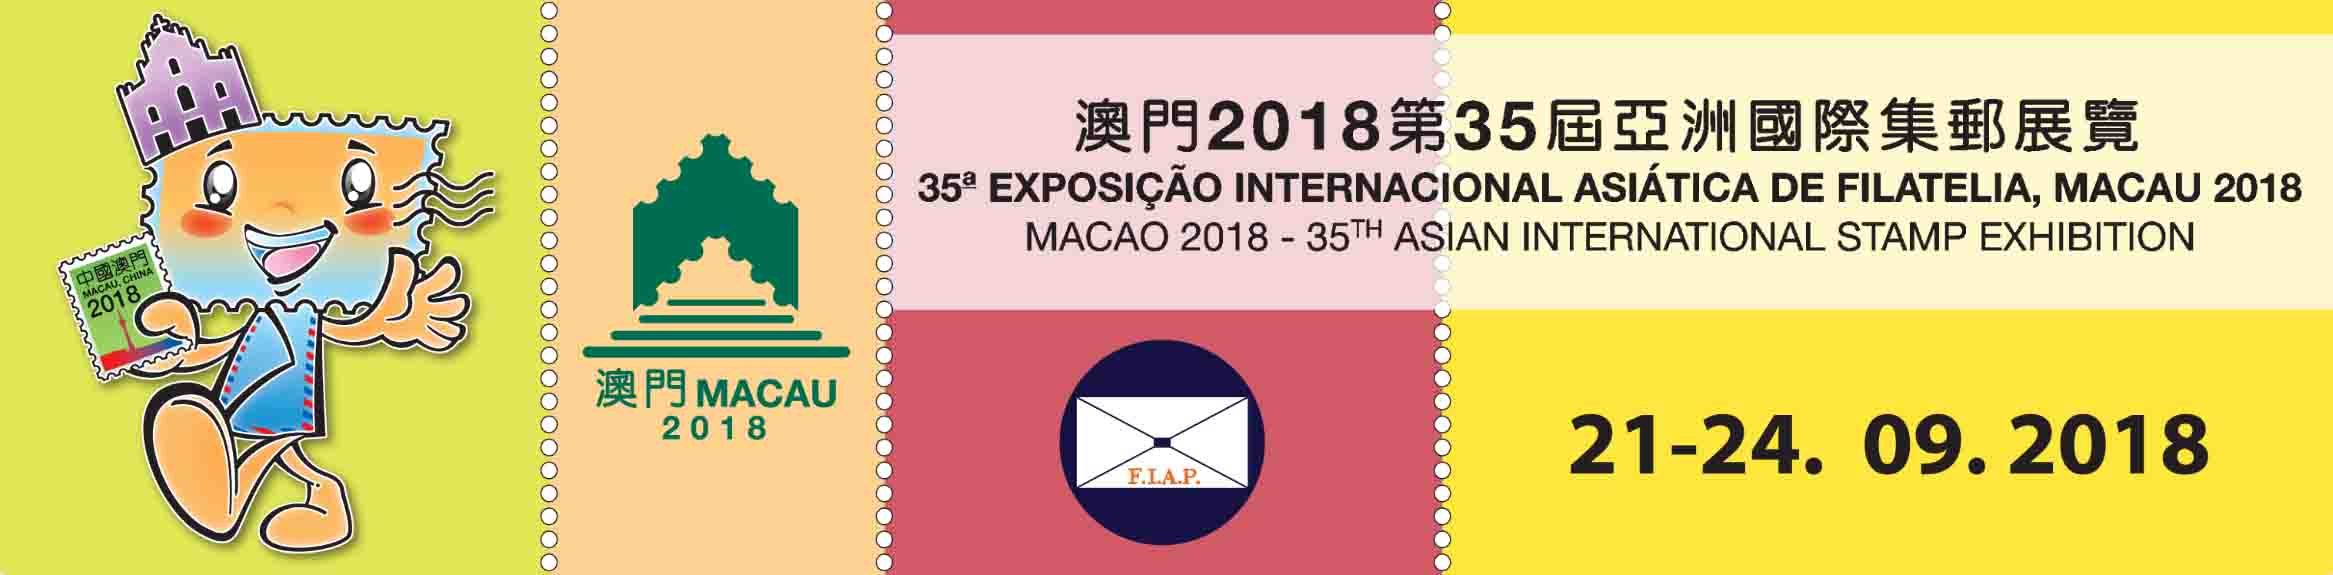 マカオ第35回アジア国際切手展